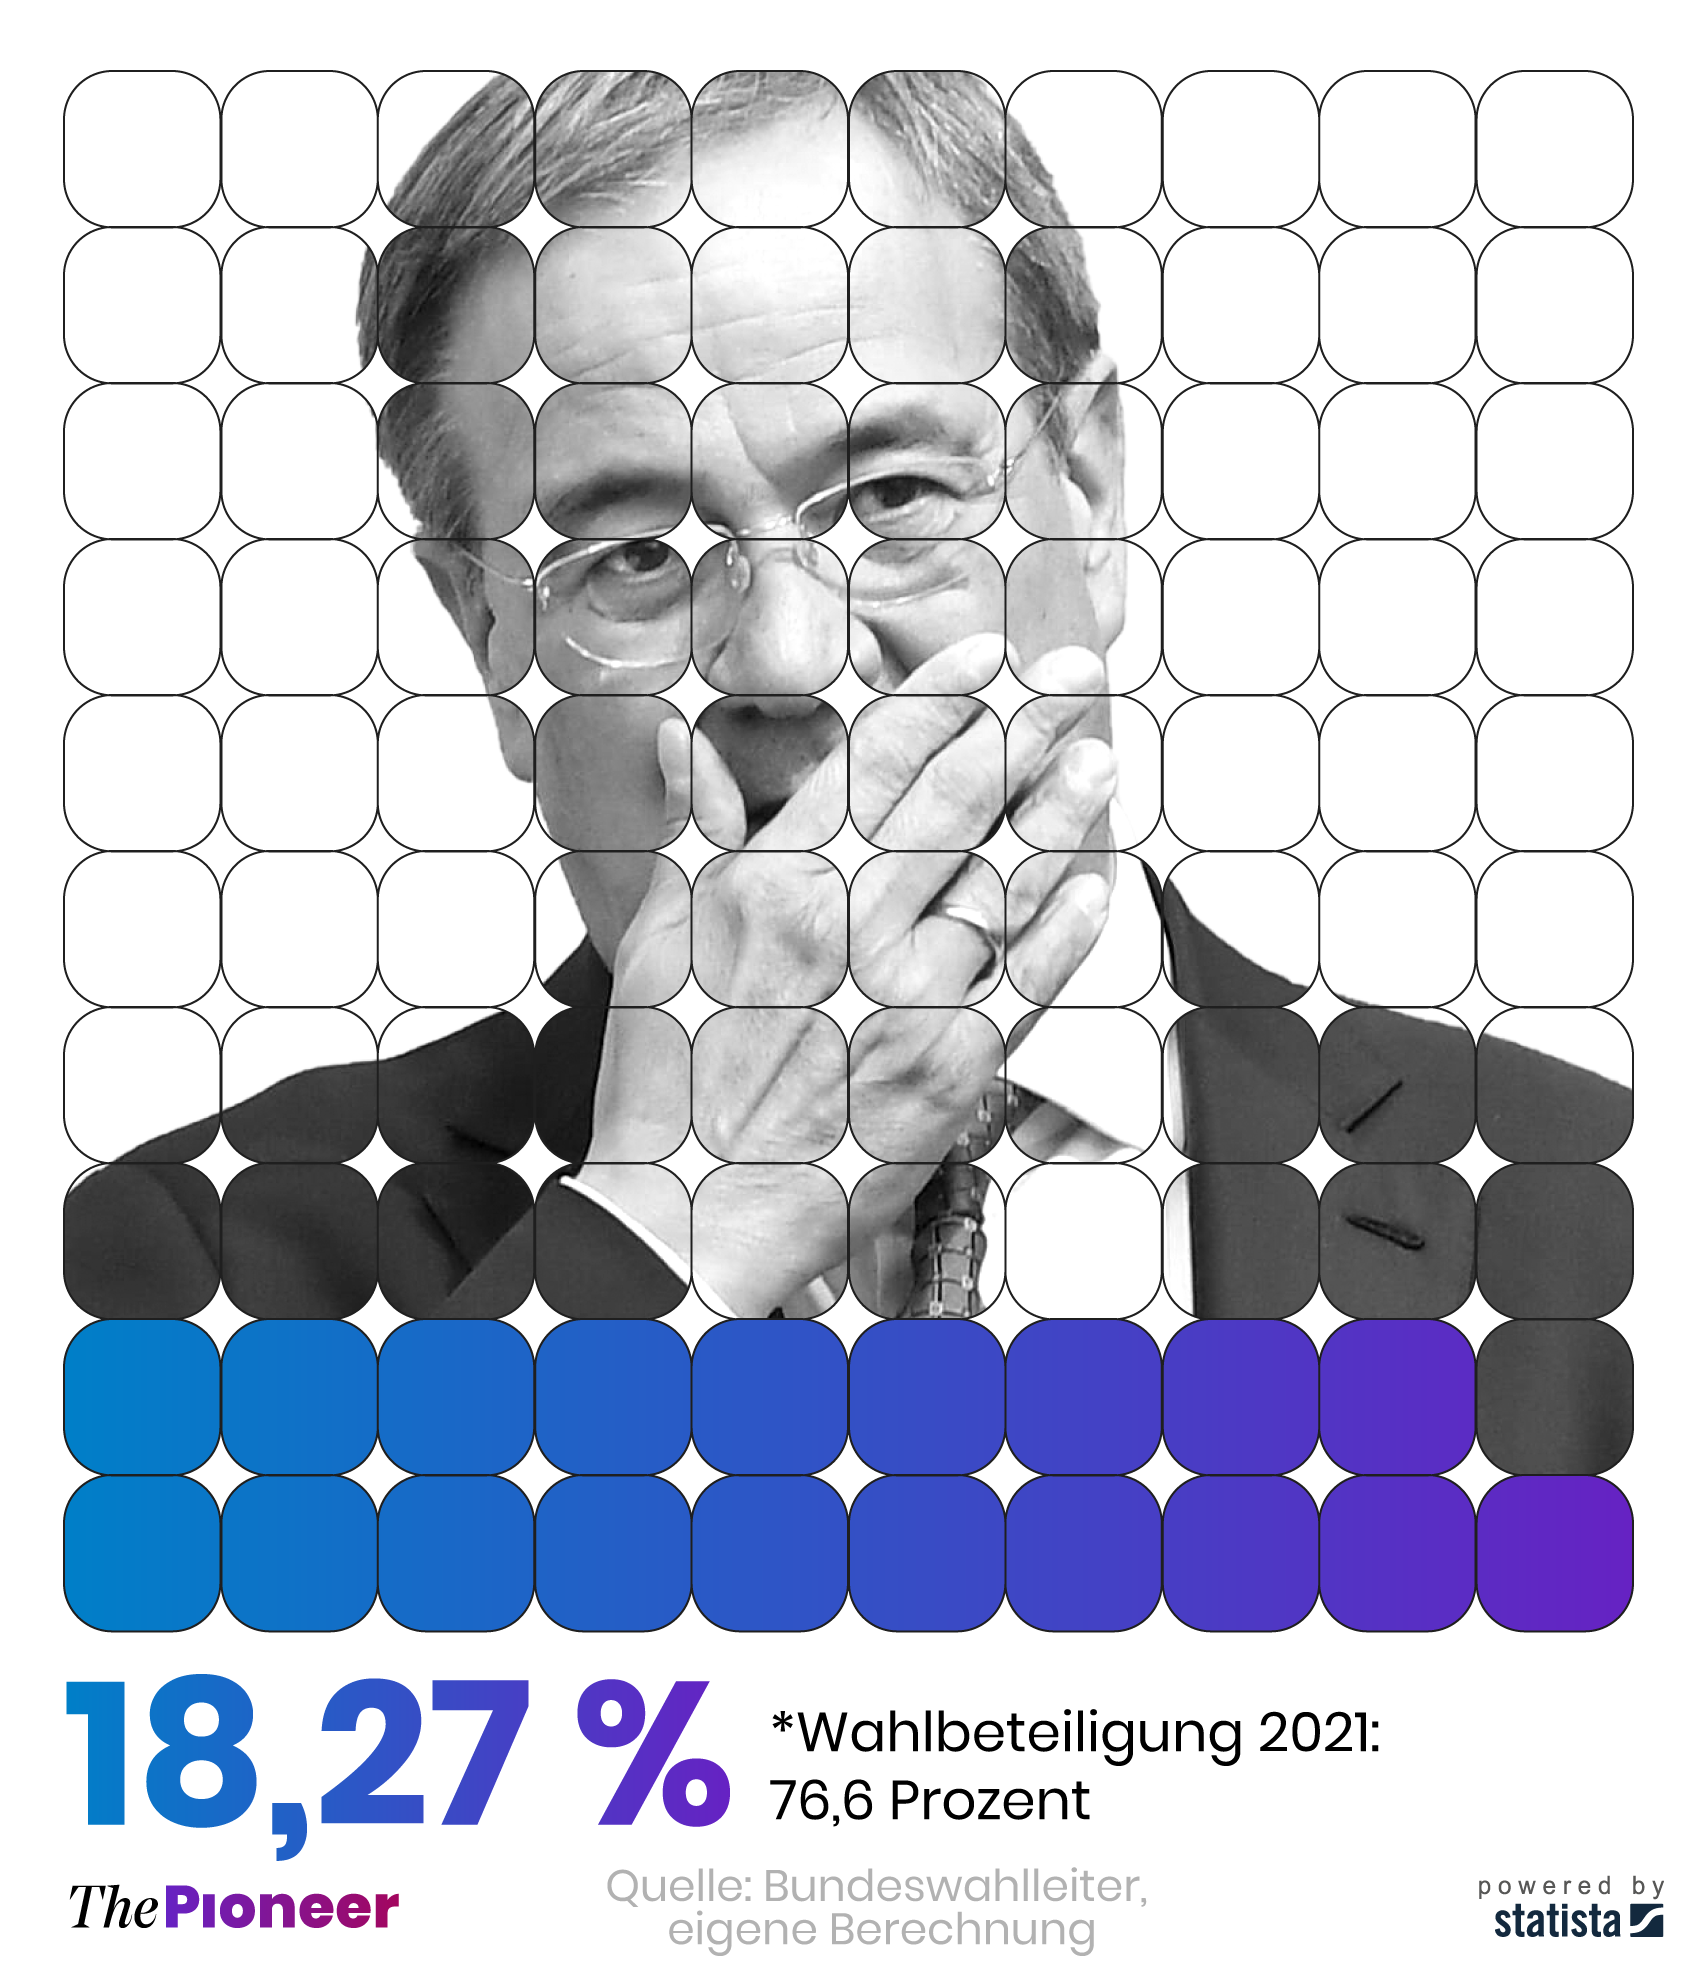  Bundestagswahlergebnis der Union zur Laschet-Wahl unter Einbeziehung aller Wahlberechtigten, in Prozent